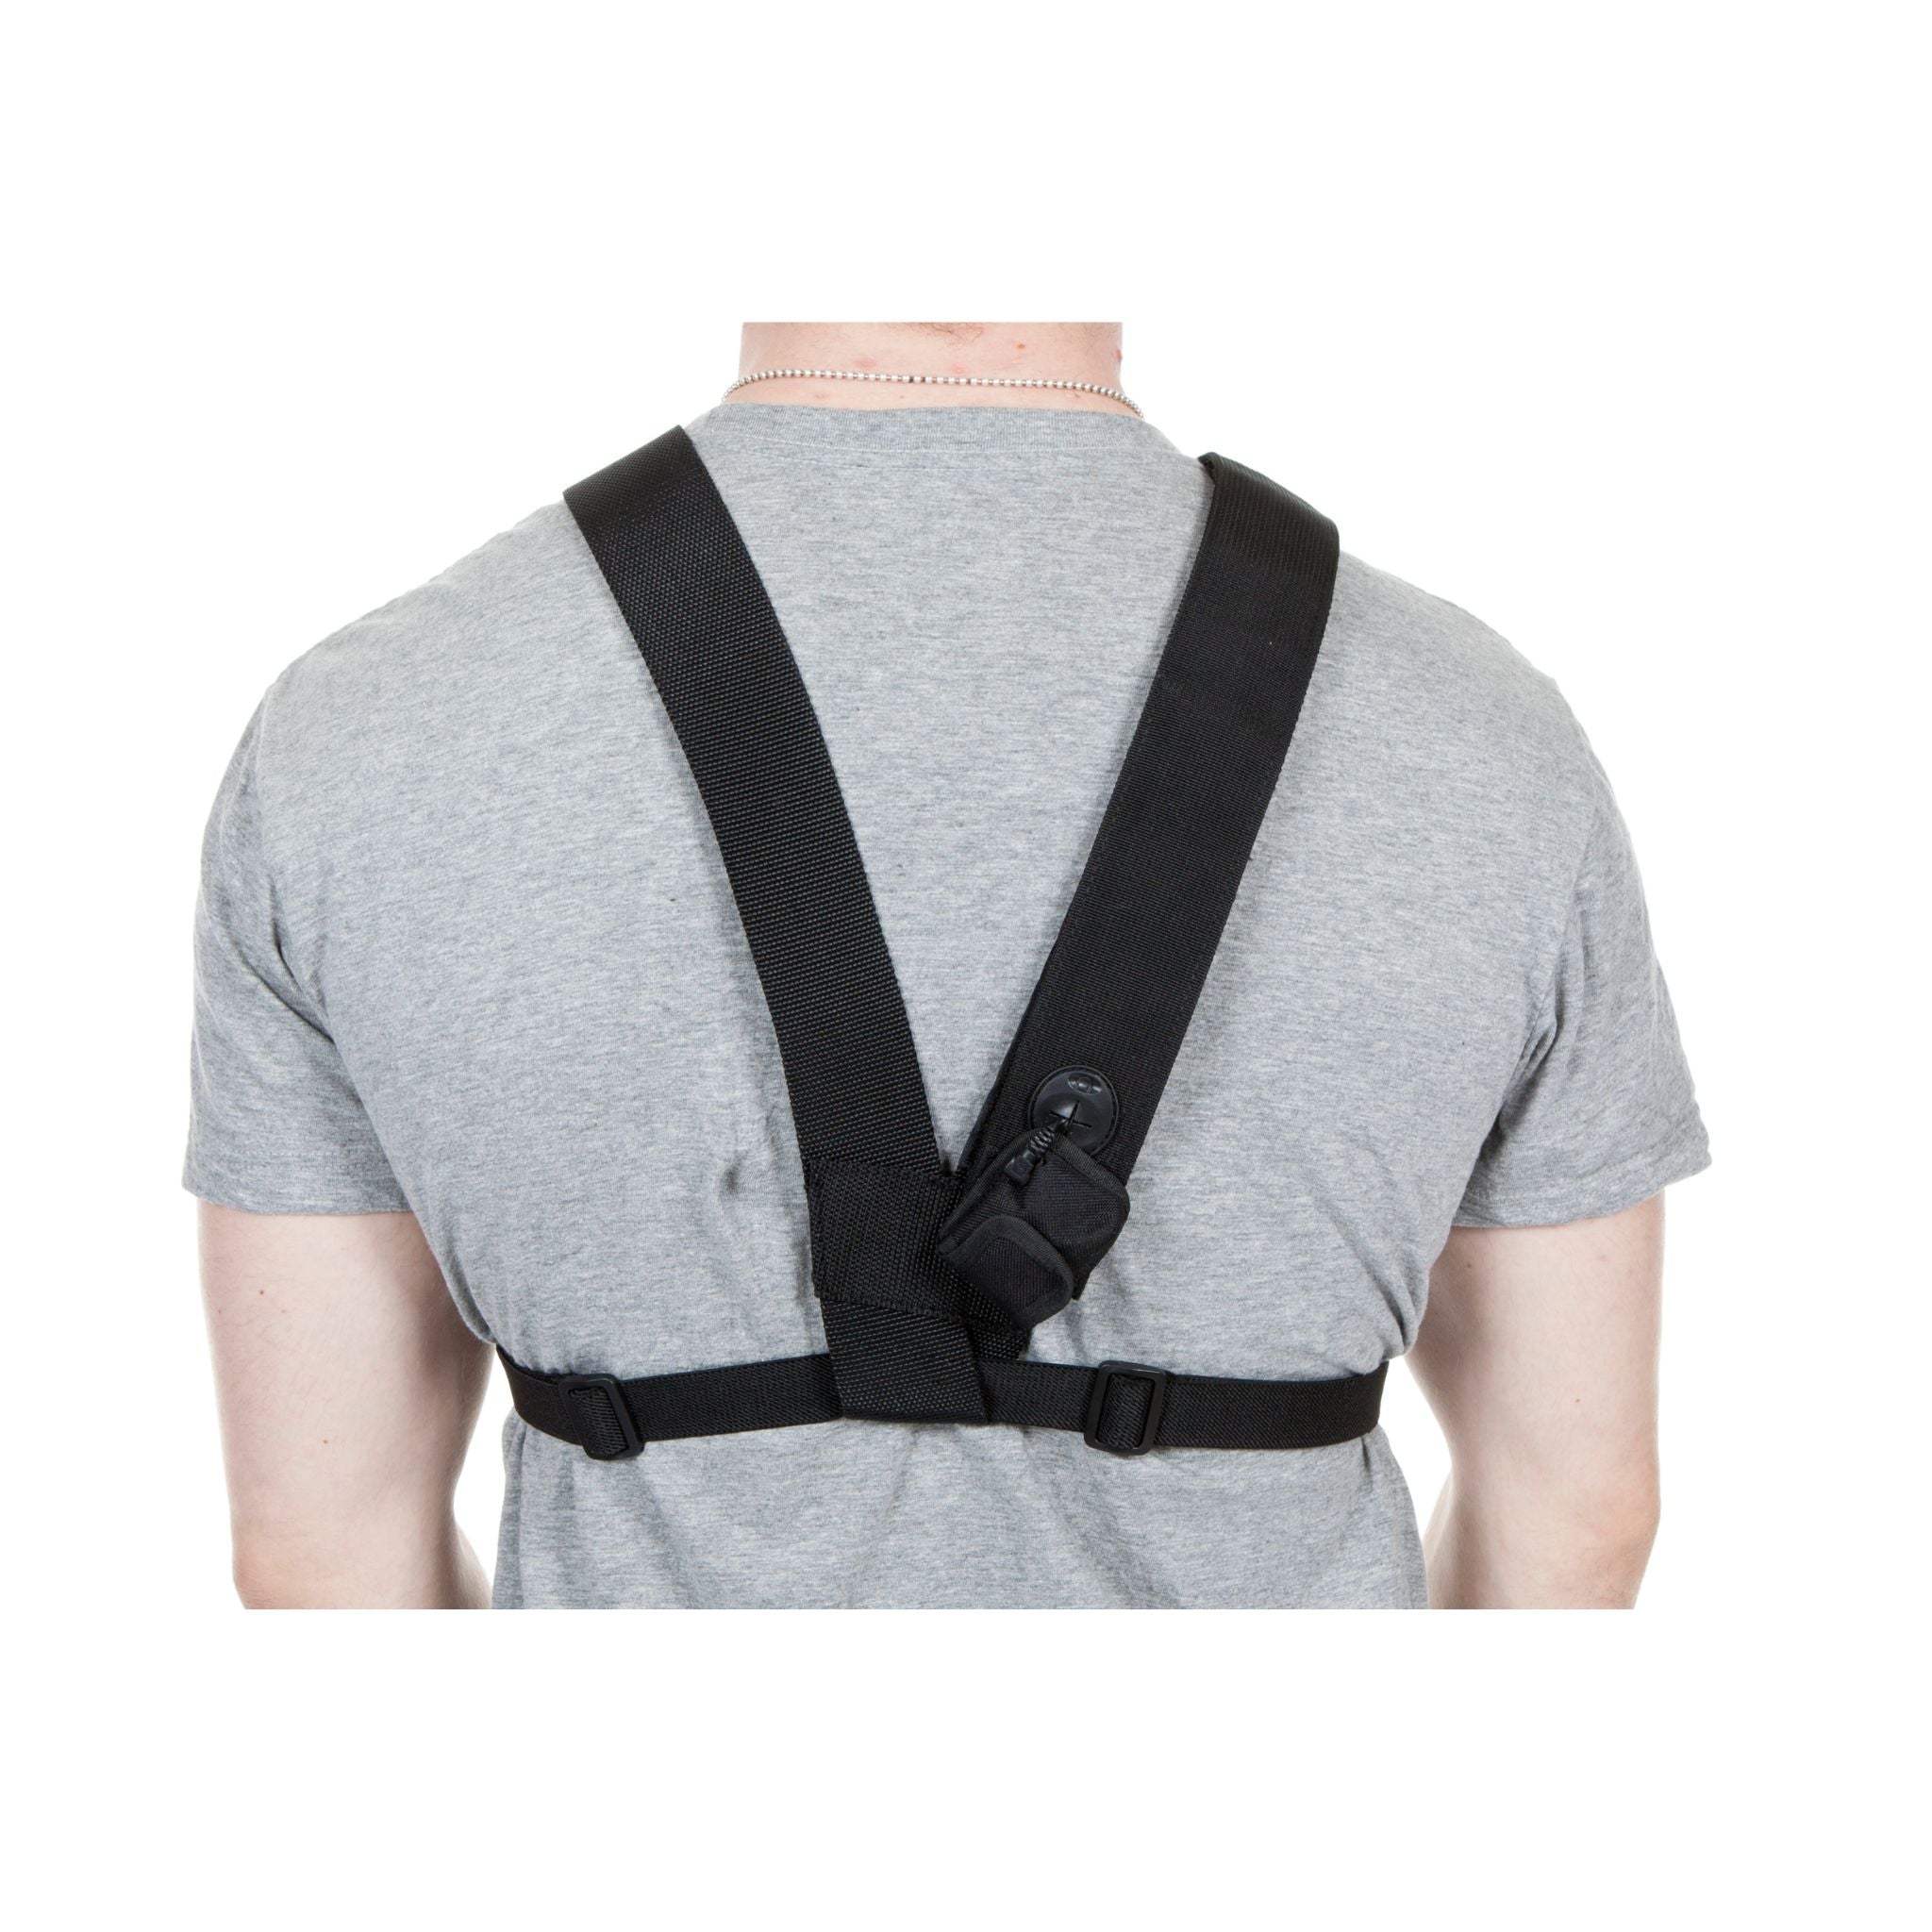 chest-rig-tool-vest-adjustable-straps-for-comfort